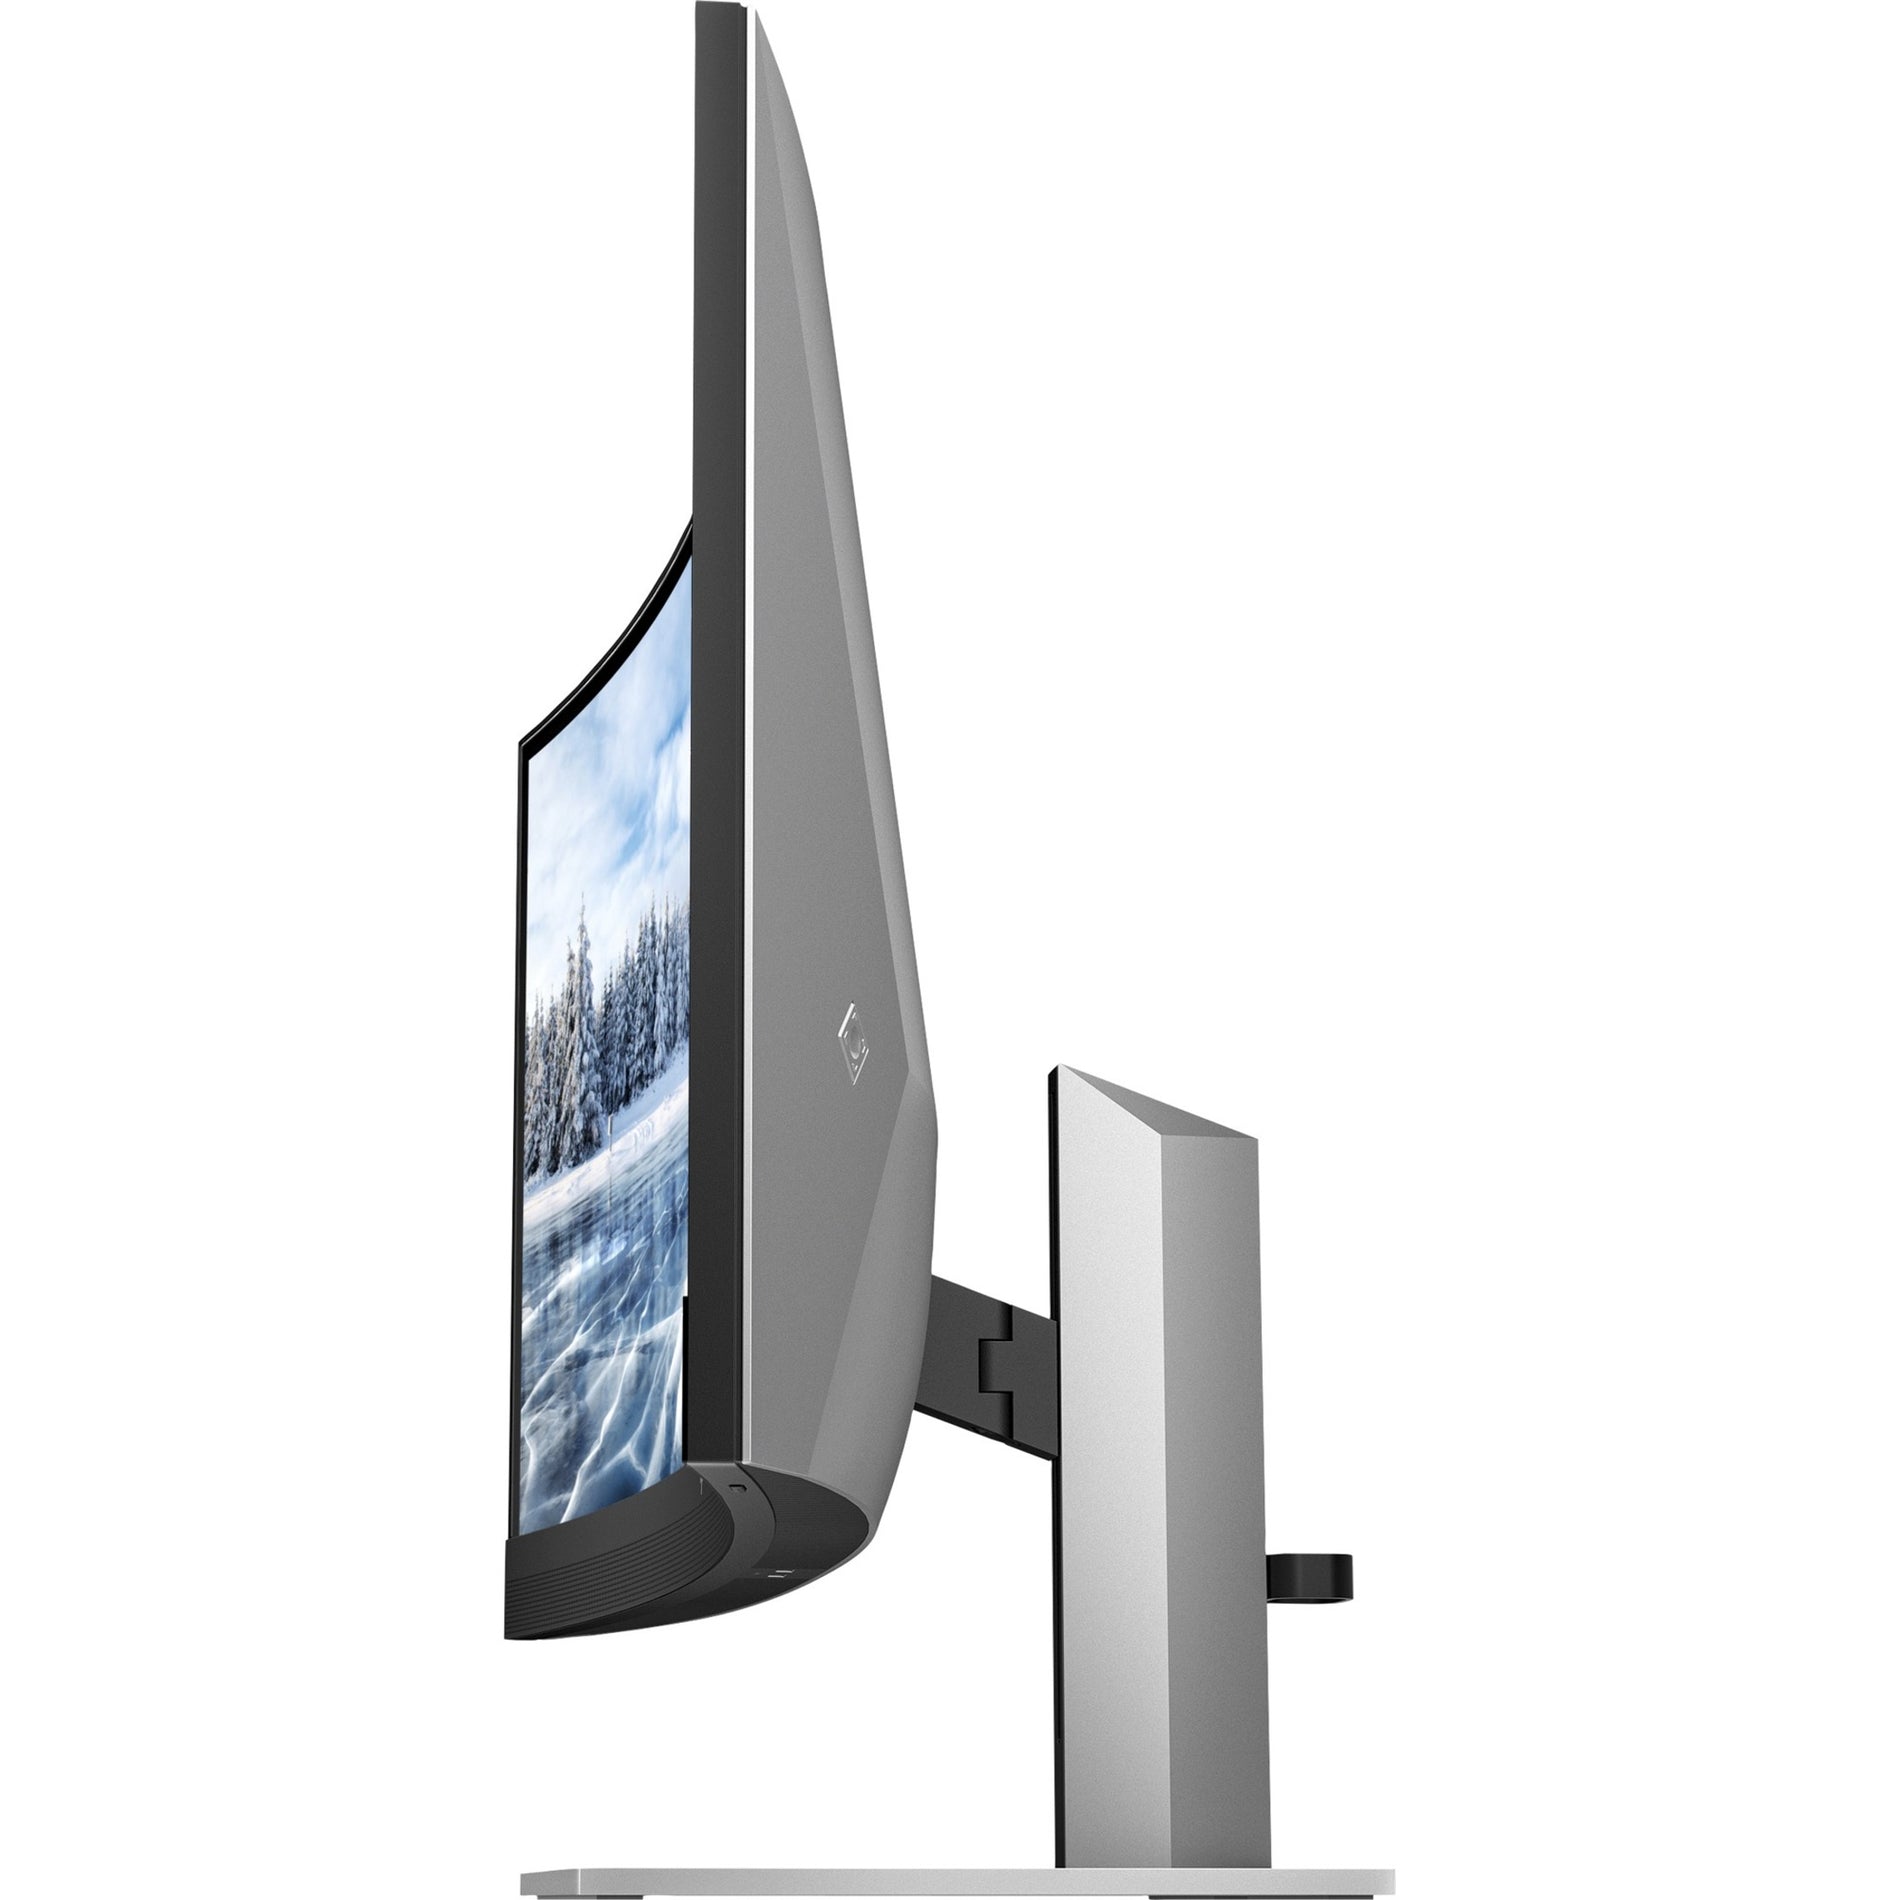 HP Z34c G3 WQHD Curved Display, 34", 3440 x 1440, 99% sRGB, USB-C, HDMI, Webcam [Discontinued]